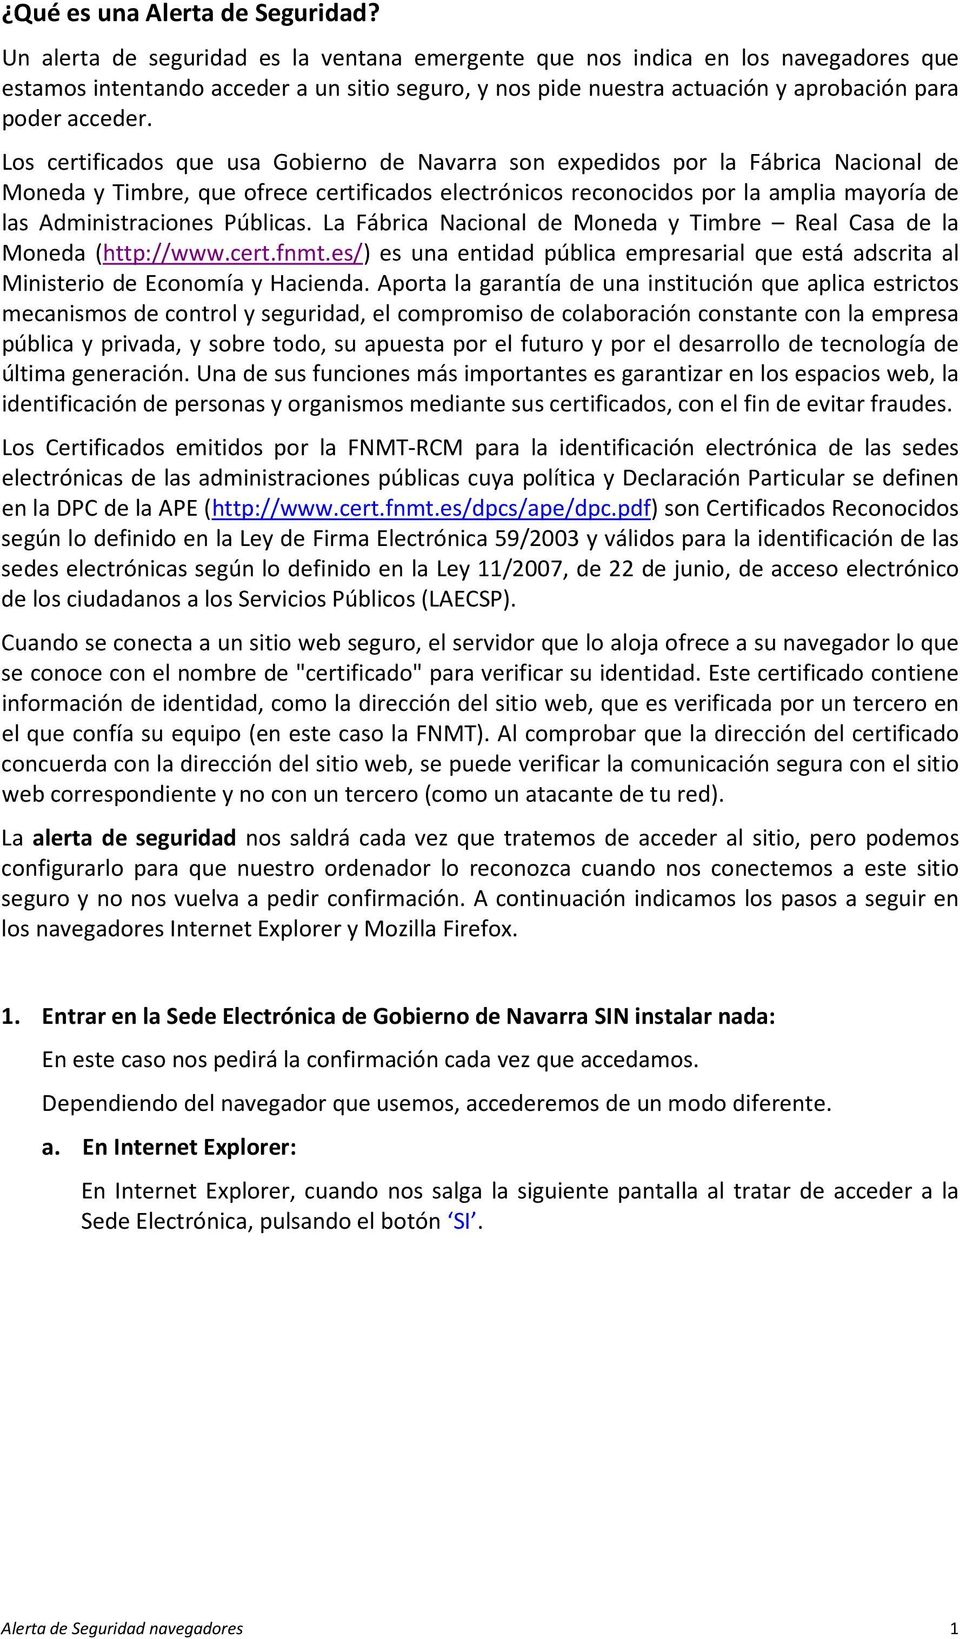 Los certificados que usa Gobierno de Navarra son expedidos por la Fábrica Nacional de Moneda y Timbre, que ofrece certificados electrónicos reconocidos por la amplia mayoría de las Administraciones